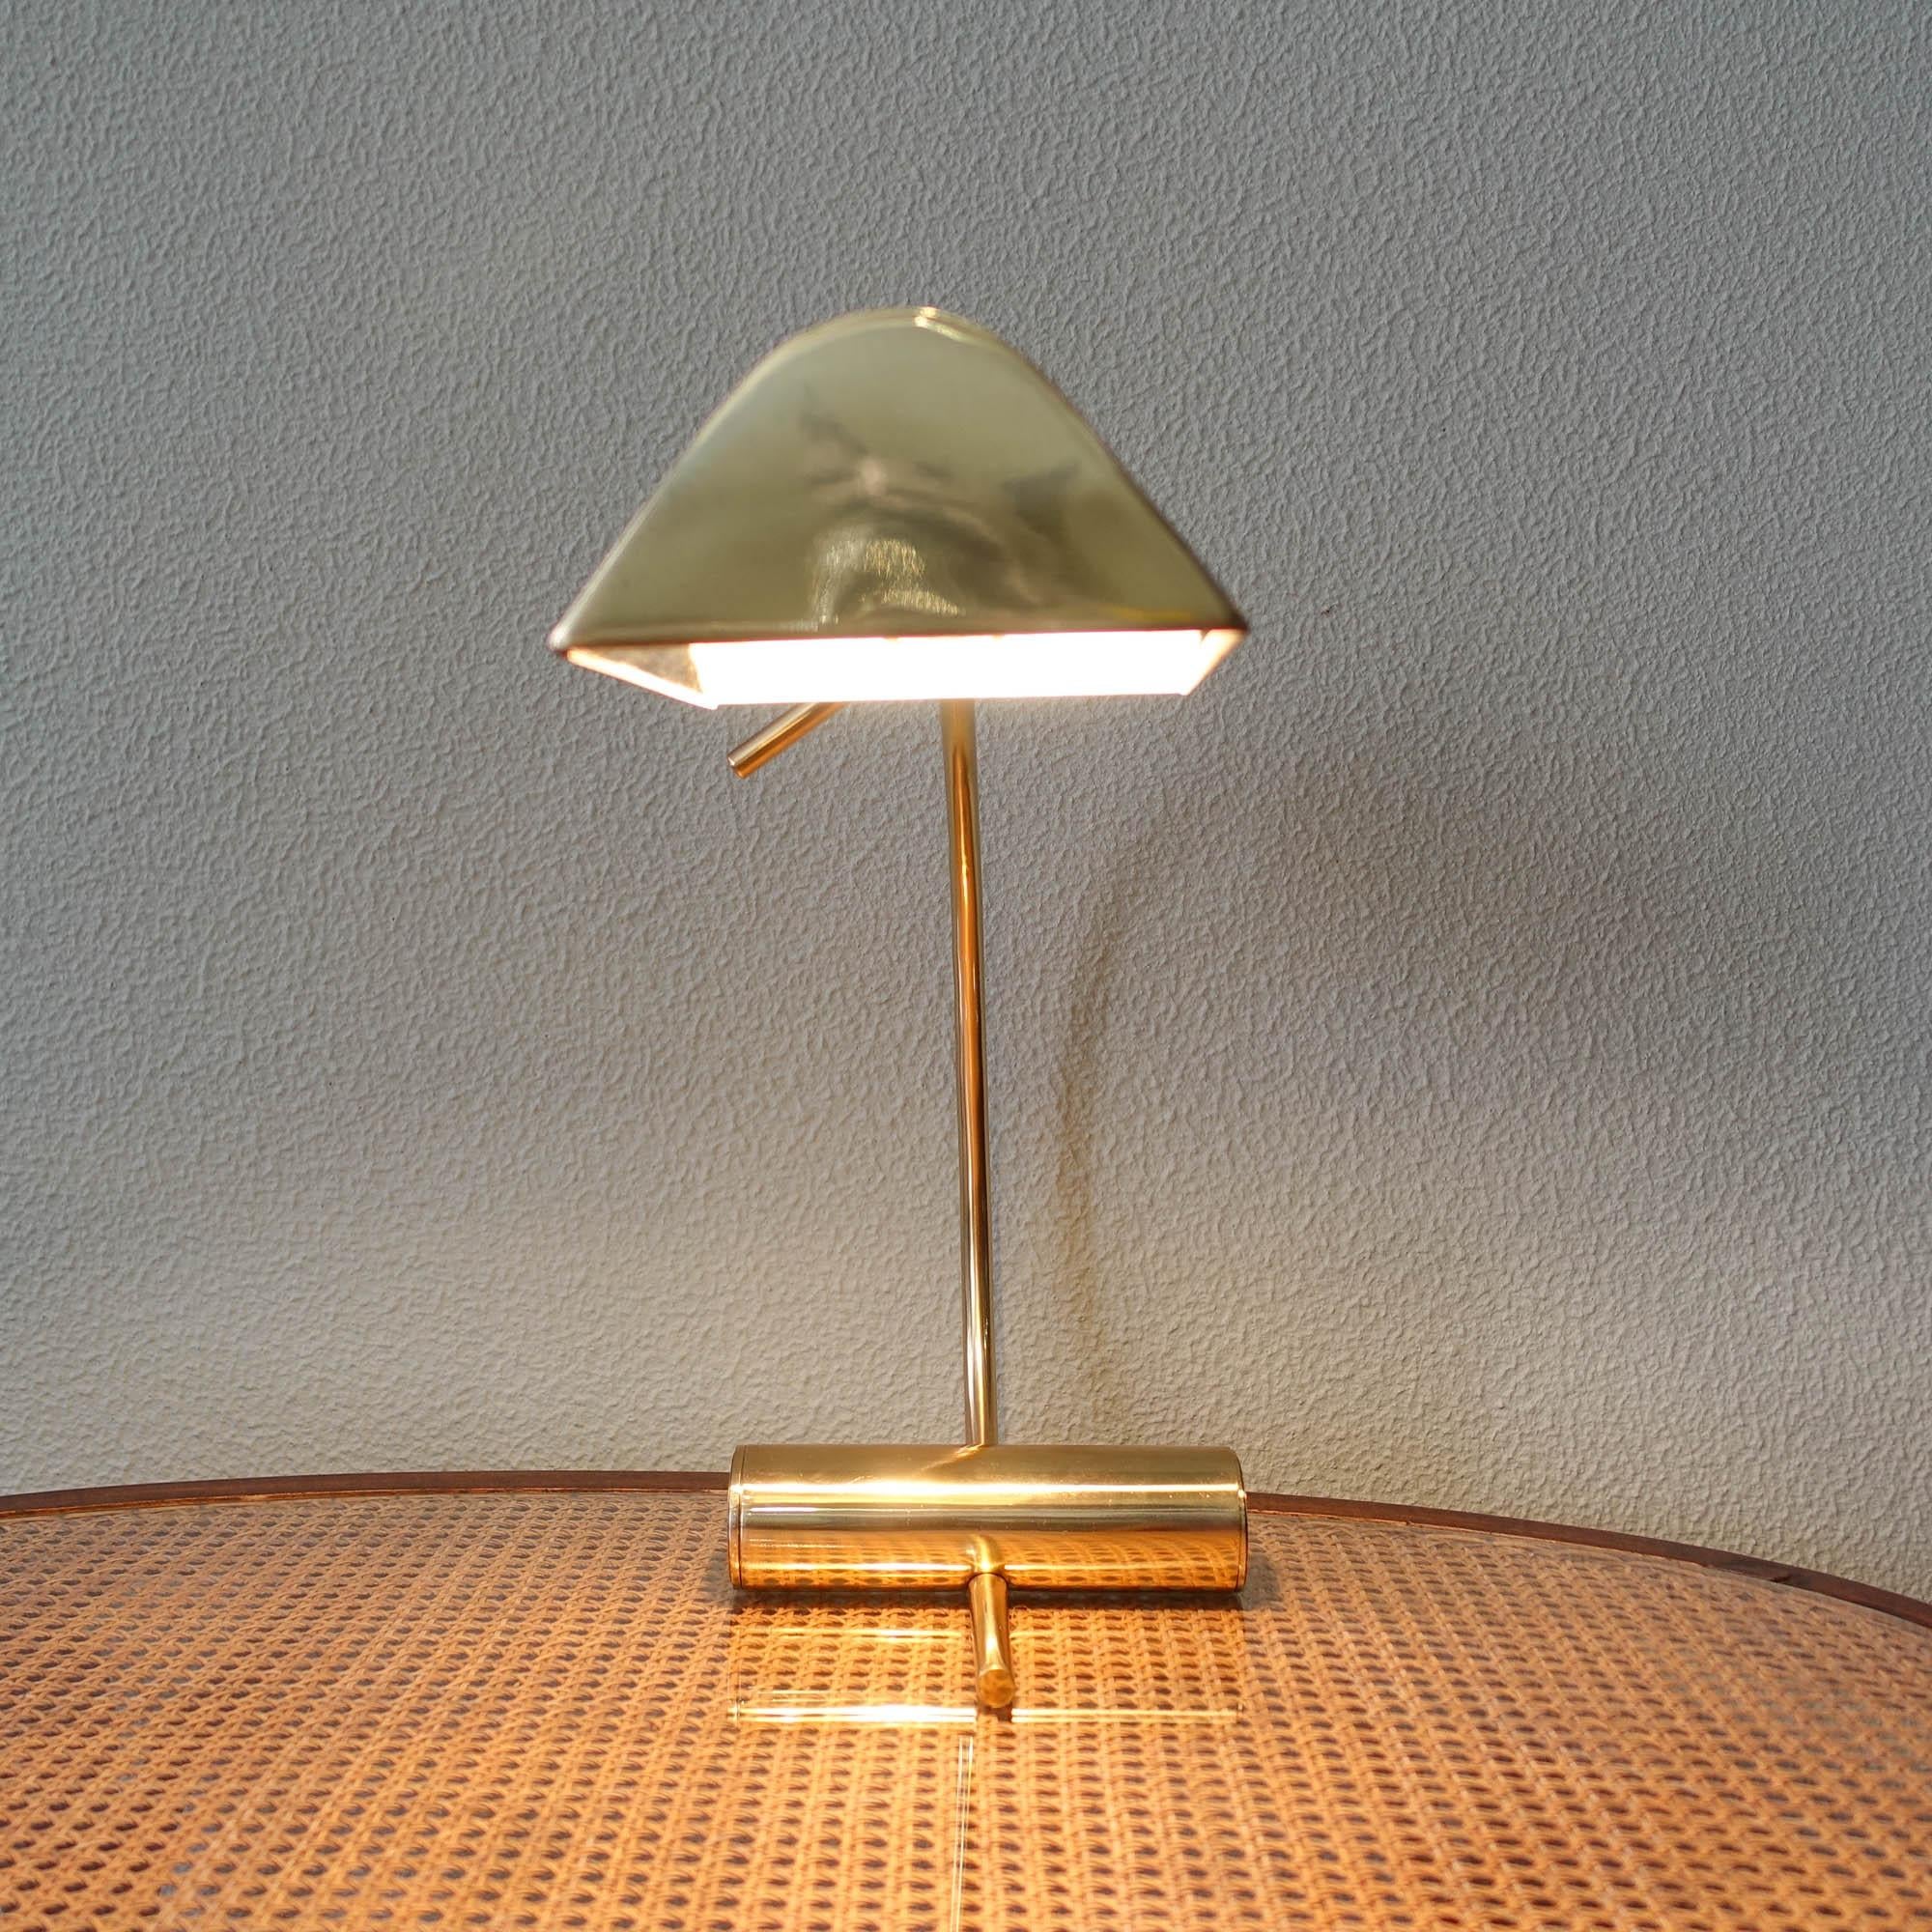 Tischlampe aus Messing von Boulanger, 1970er Jahre (Ende des 20. Jahrhunderts)